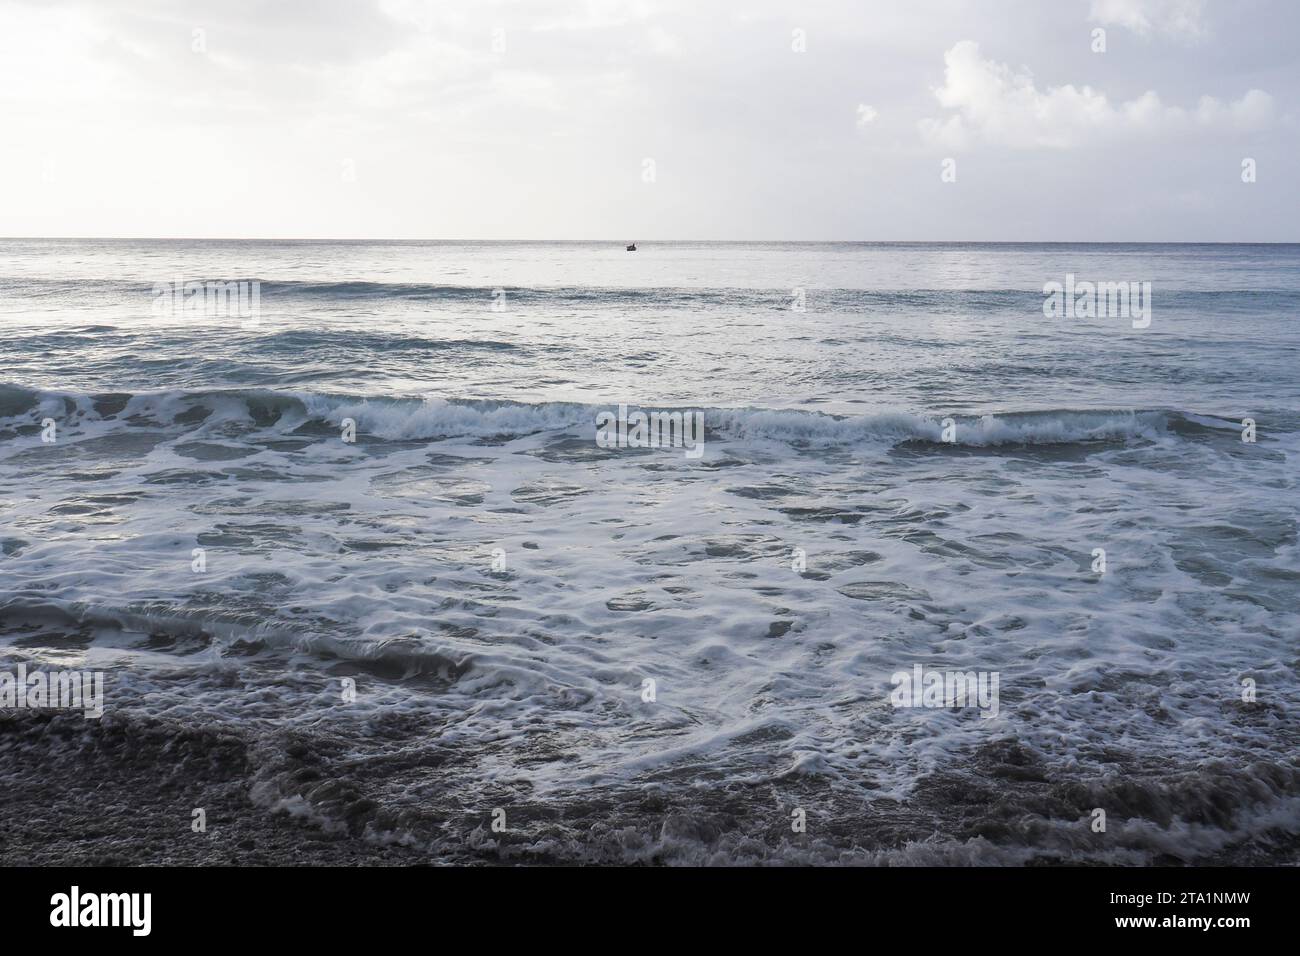 Anse couleuvre, Nord de la Martinique, plages les plus Sauvages de l'île. Sable noir volcanique et Nature exubérante Martinique, Antillen Stockfoto